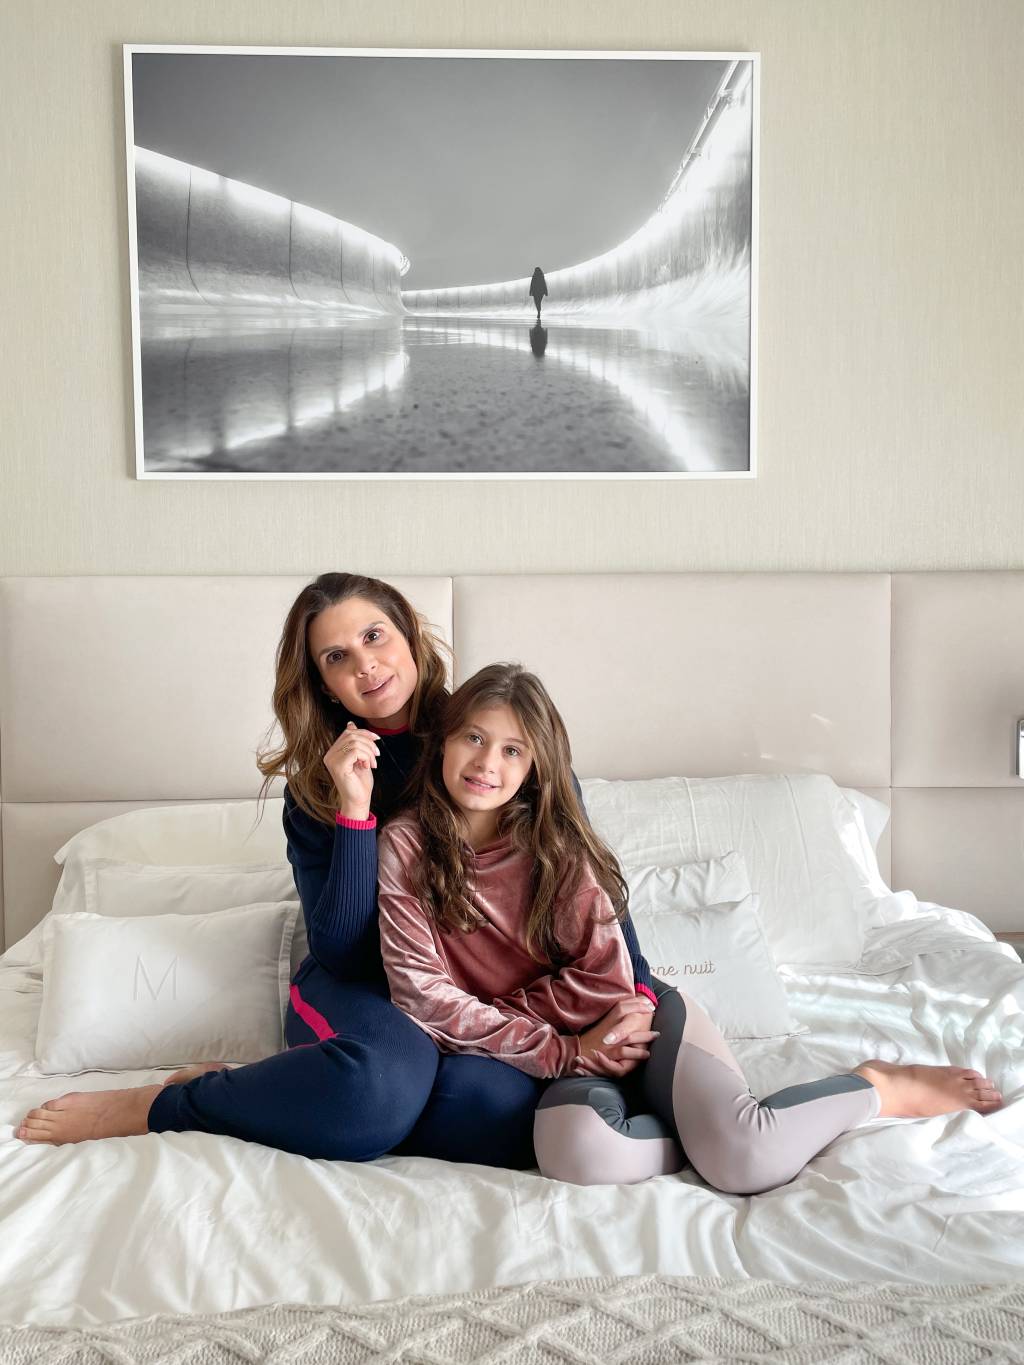 Mariana Kupfer e a filha Vicky posam sentadas na cama branca com fotografia produzida por Aryanne Valgas.